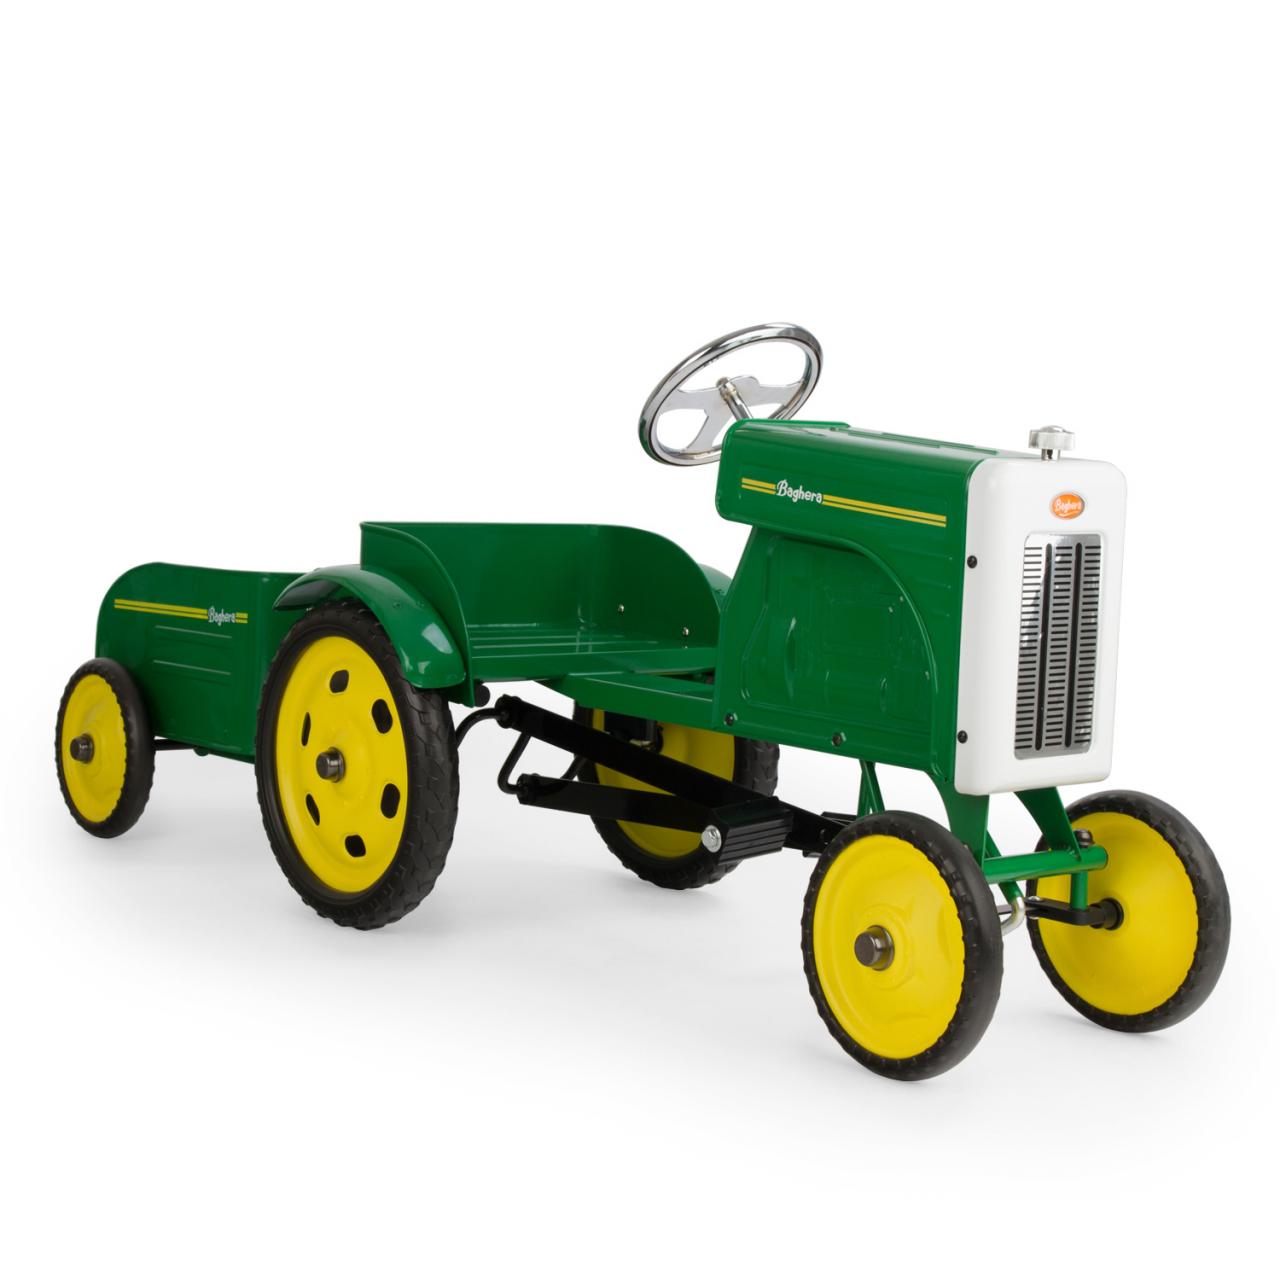 https://www.maennerkontor.shop/file/format/1051/product_detail_large/4faa46/baghera-traktor-und-anh%C3%A4nger-vorne-kinderauto-kindertraktor-kindergeschenk-kinderspielzeug.jpeg